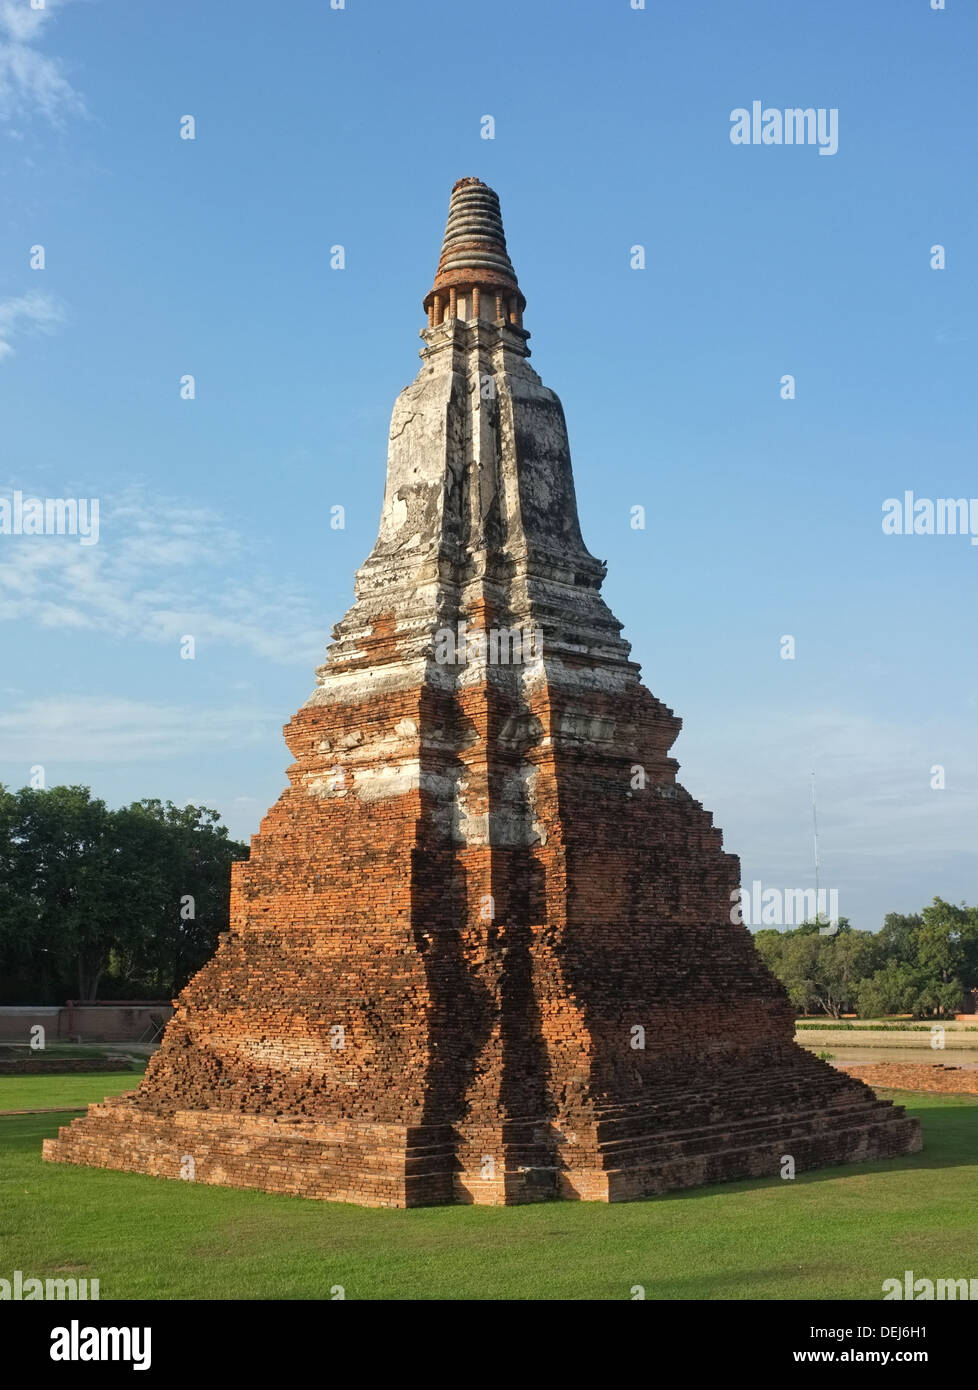 Wat Chaiwatthanaram, Ayutthaya Thailand Stock Photo